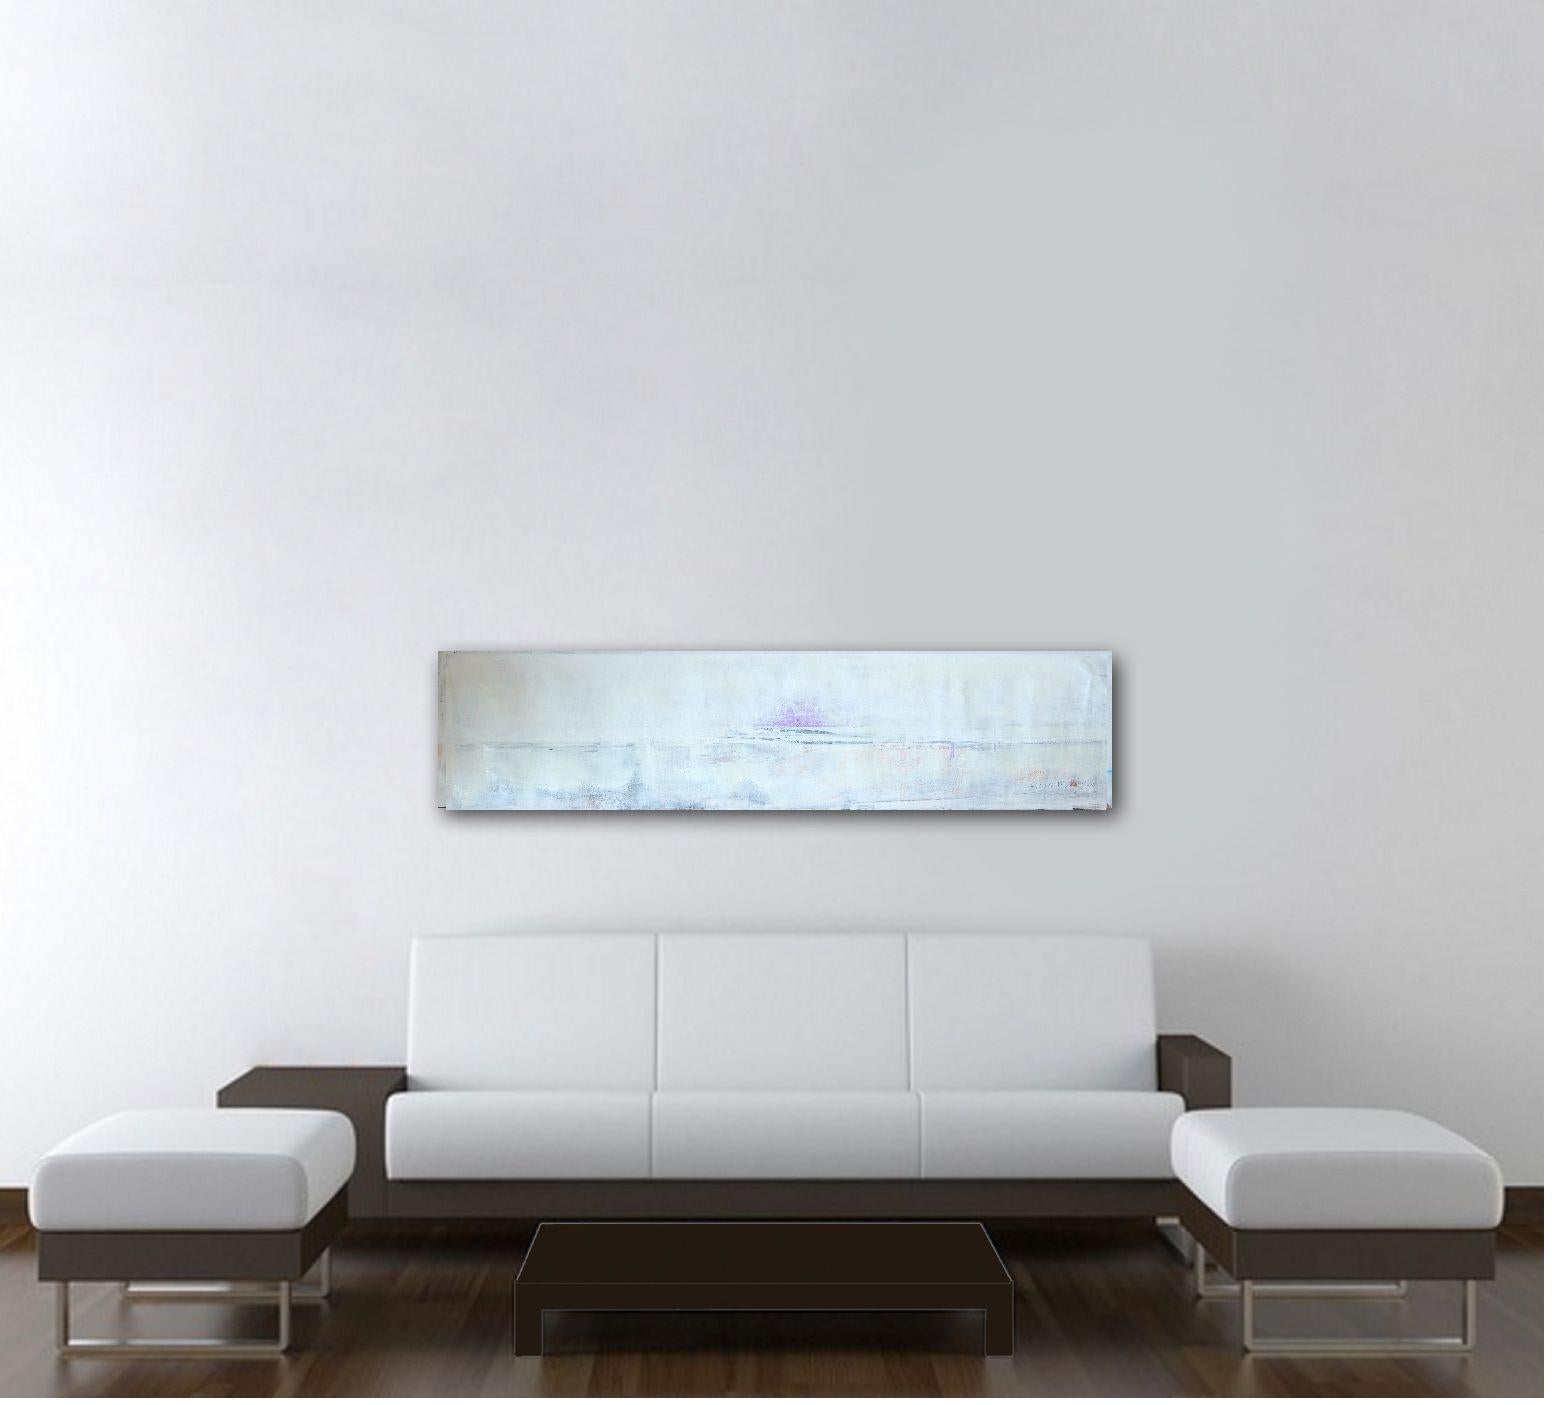 Die Skyline-Serie schafft ein Gefühl von Raum und bietet ein System zur Anordnung Ihrer   Umwelt, um Harmonie zu schaffen.    Dieses hochwertige, einzigartige Acrylgemälde auf Leinwand ist 63X14